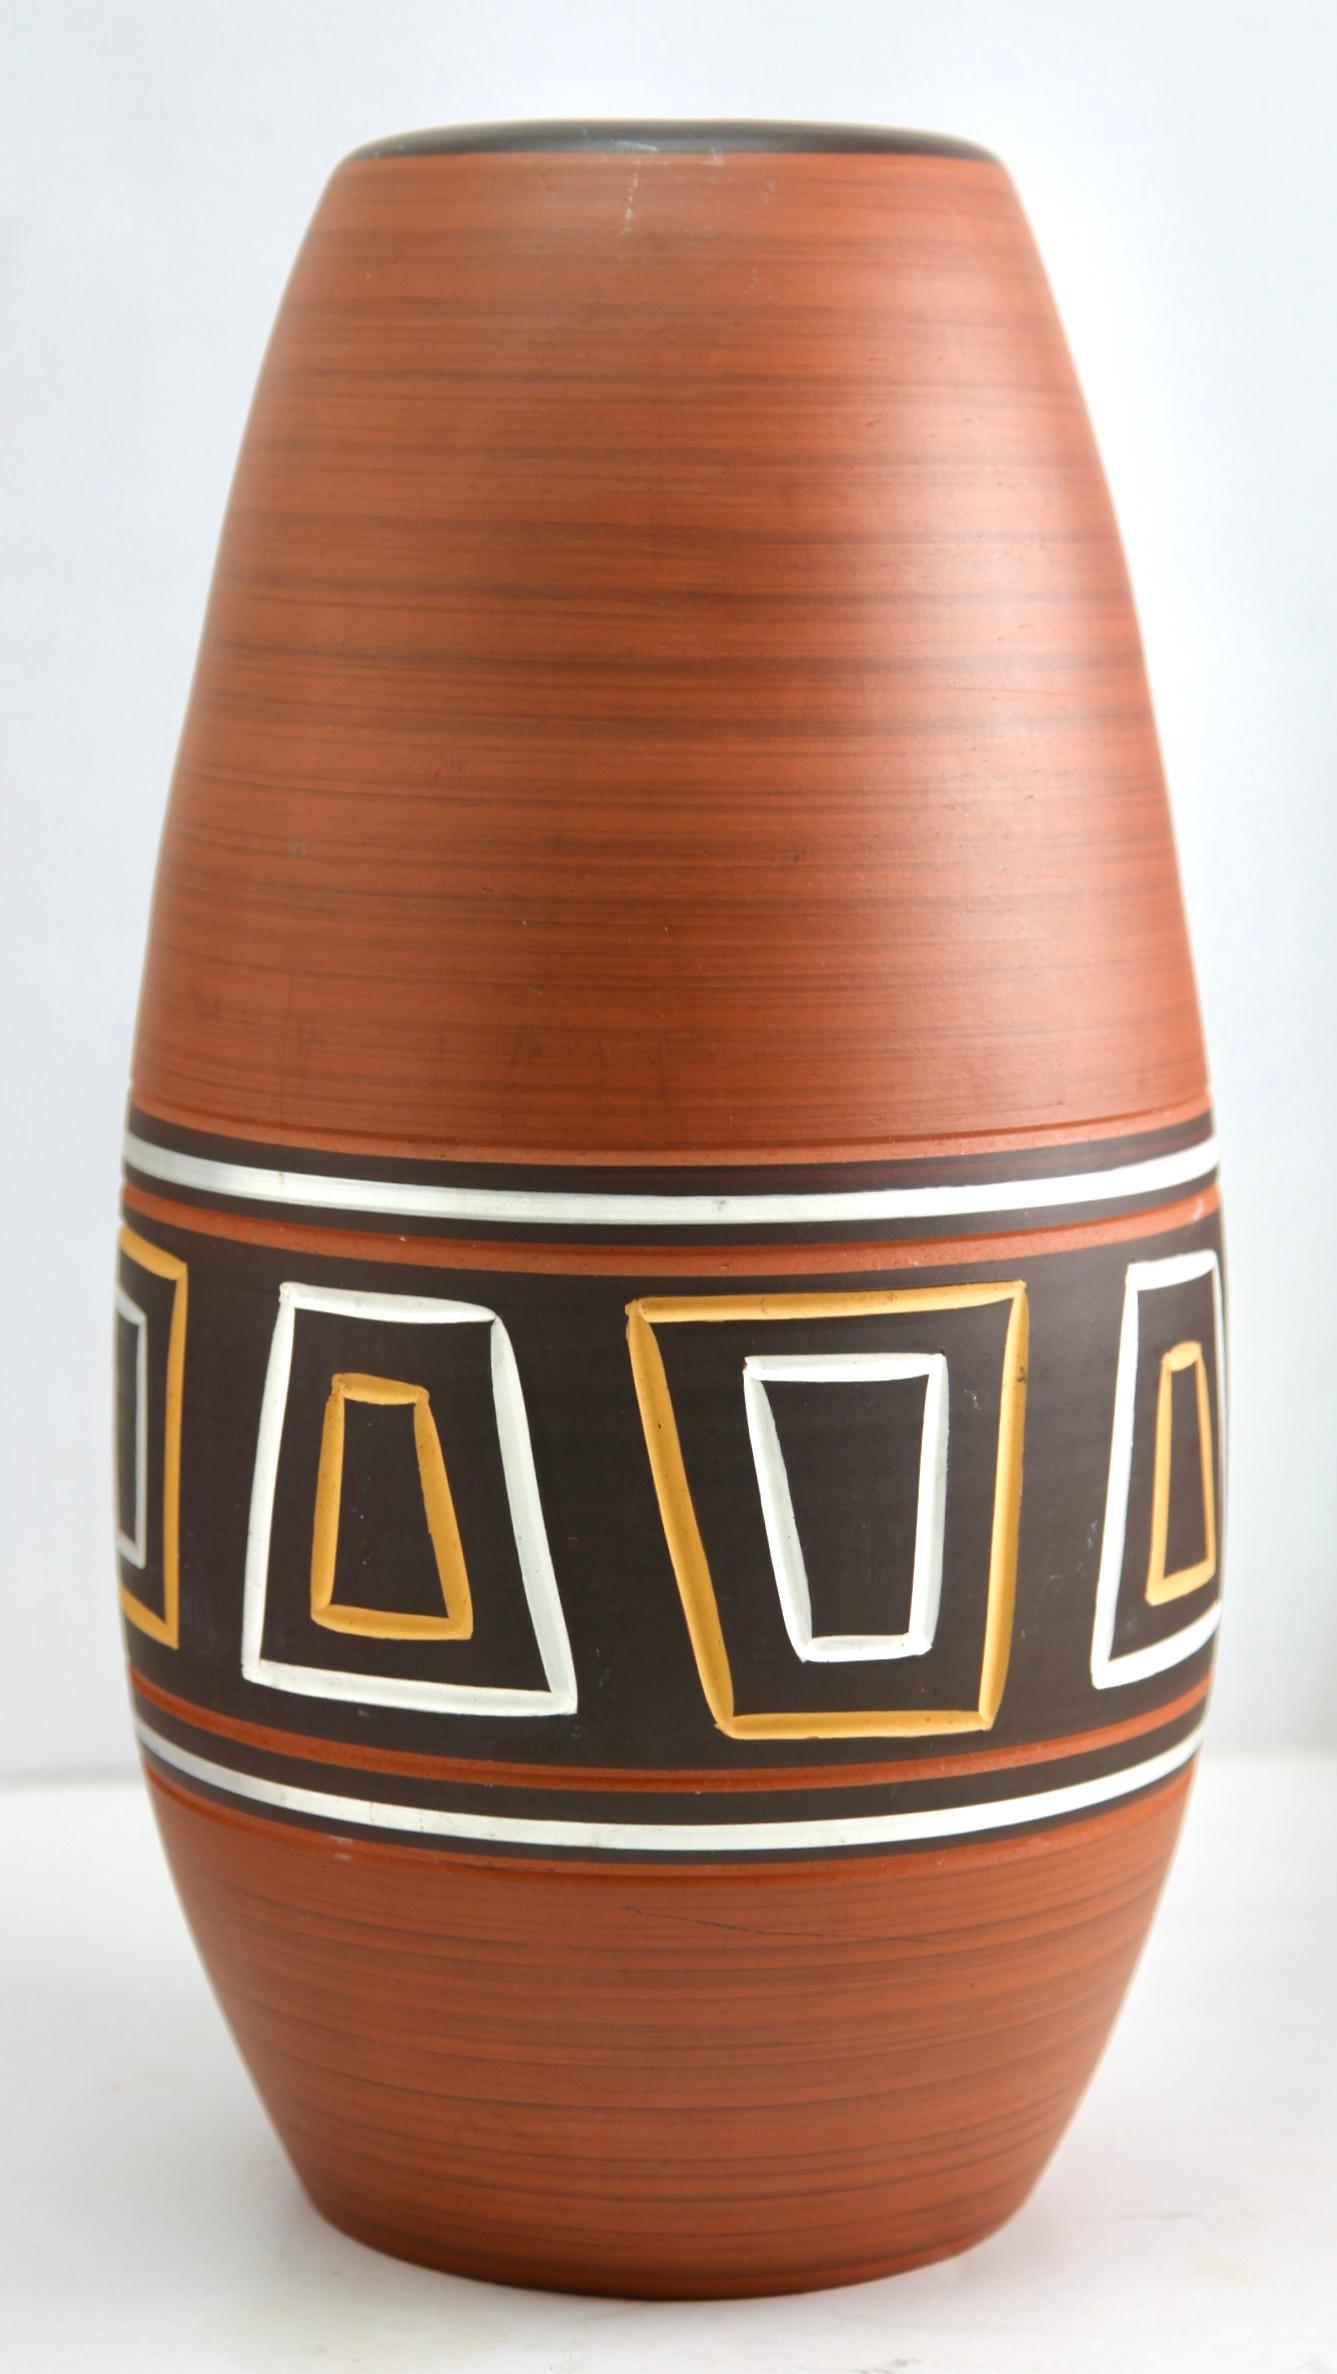 Diese originelle Vintage-Vase wurde in den 1970er Jahren in Deutschland hergestellt. Sie ist aus Keramik gefertigt.
Auf dem Boden ist die Vasen-Seriennummer 45-40 Handarbeit vermerkt
Geradliniges und minimalistisches Design aus den 1960er Jahren.